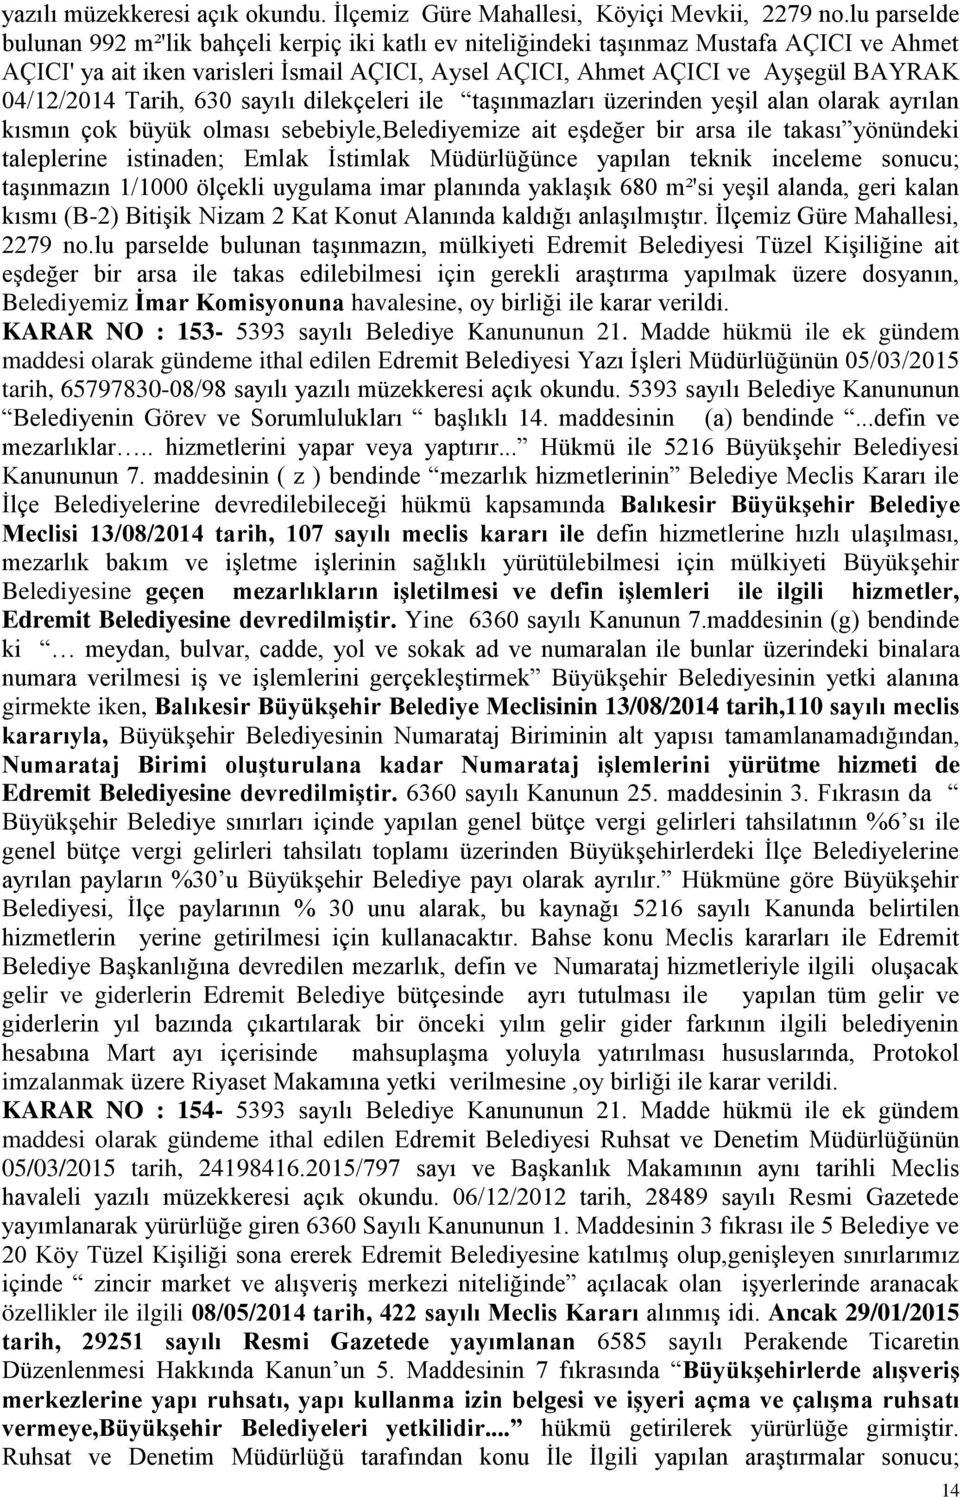 04/12/2014 Tarih, 630 sayılı dilekçeleri ile taģınmazları üzerinden yeģil alan olarak ayrılan kısmın çok büyük olması sebebiyle,belediyemize ait eģdeğer bir arsa ile takası yönündeki taleplerine